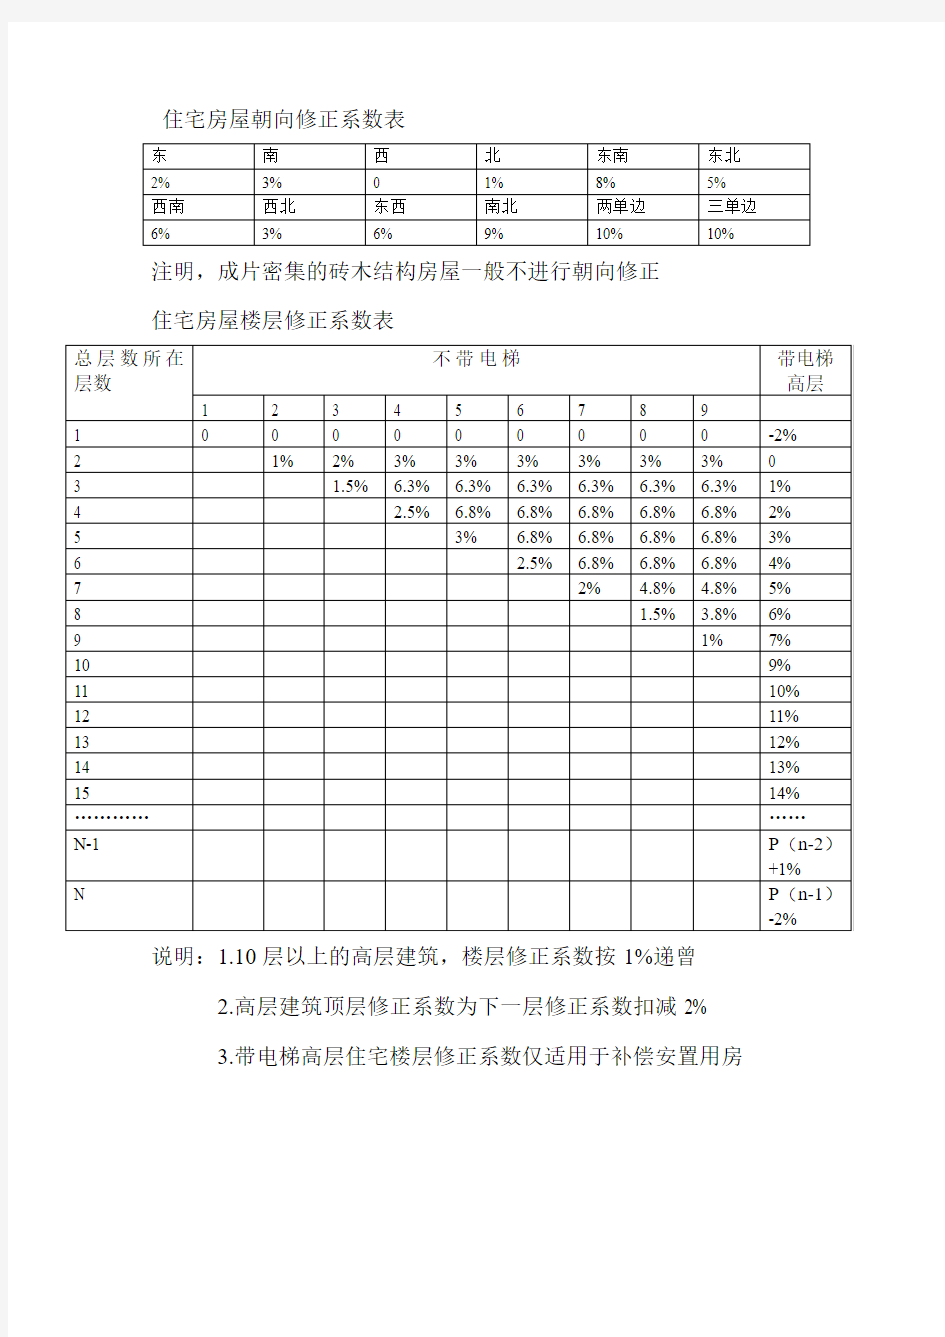 广州房地产估价市场比较法修正系数表